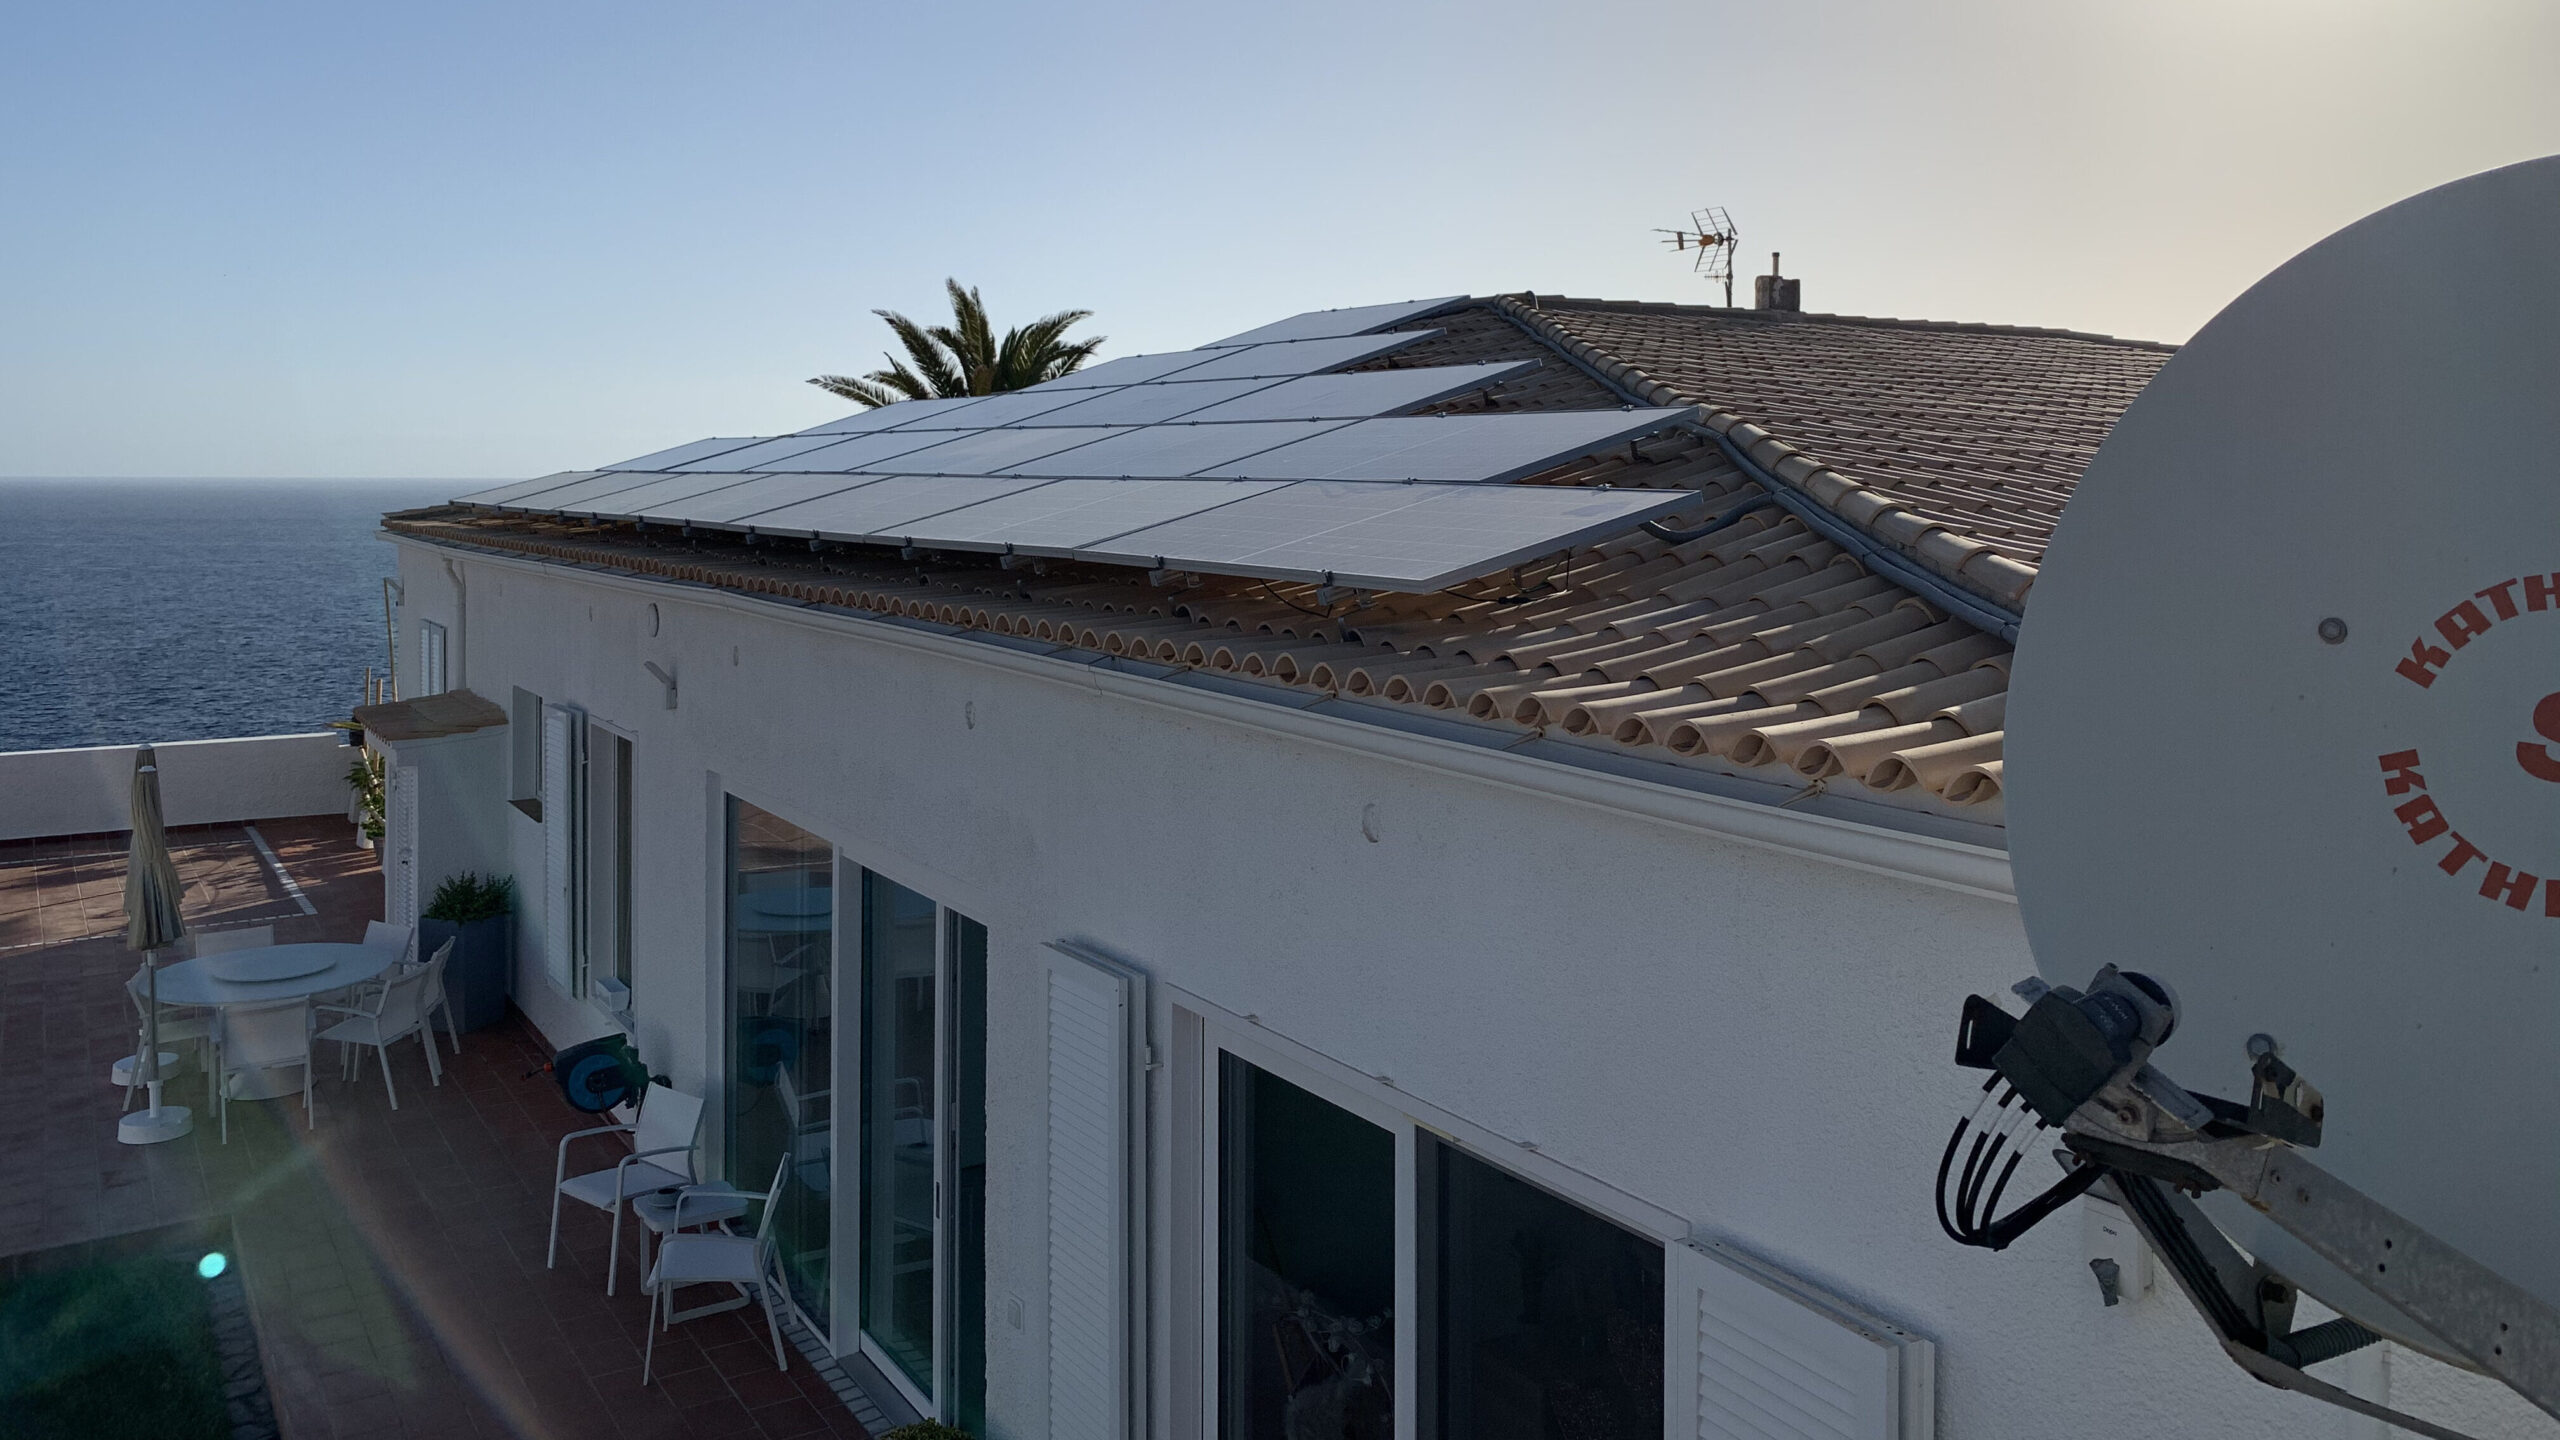 vivienda unifamiliar con placas solares en el tejado de la casa